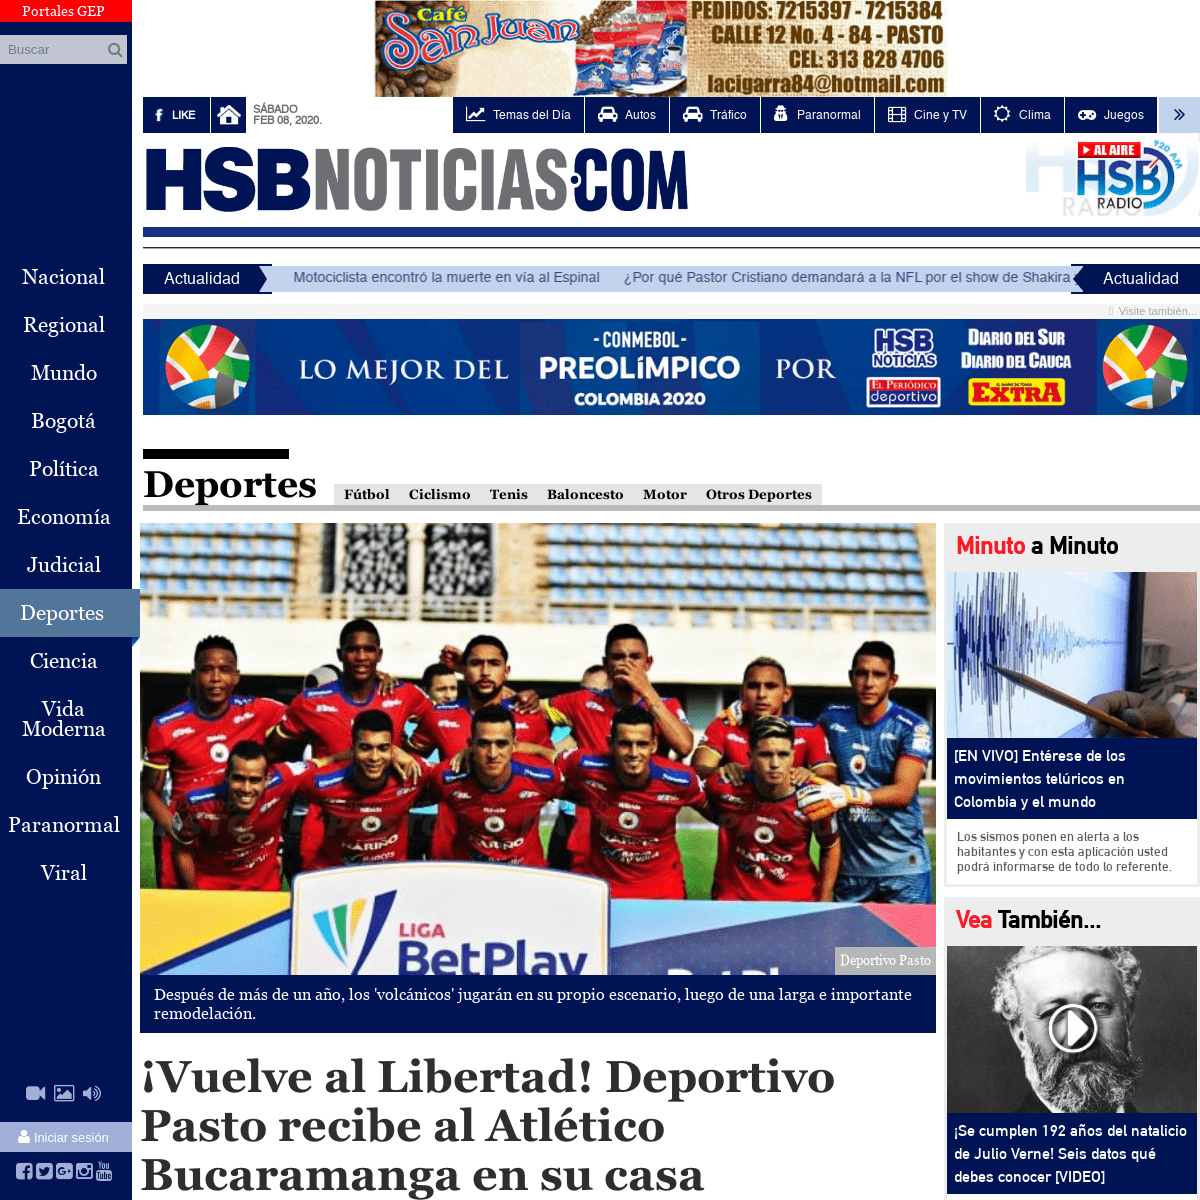 A complete backup of hsbnoticias.com/noticias/deportes/vuelve-al-libertad-deportivo-pasto-recibe-al-atletico-bucara-589362